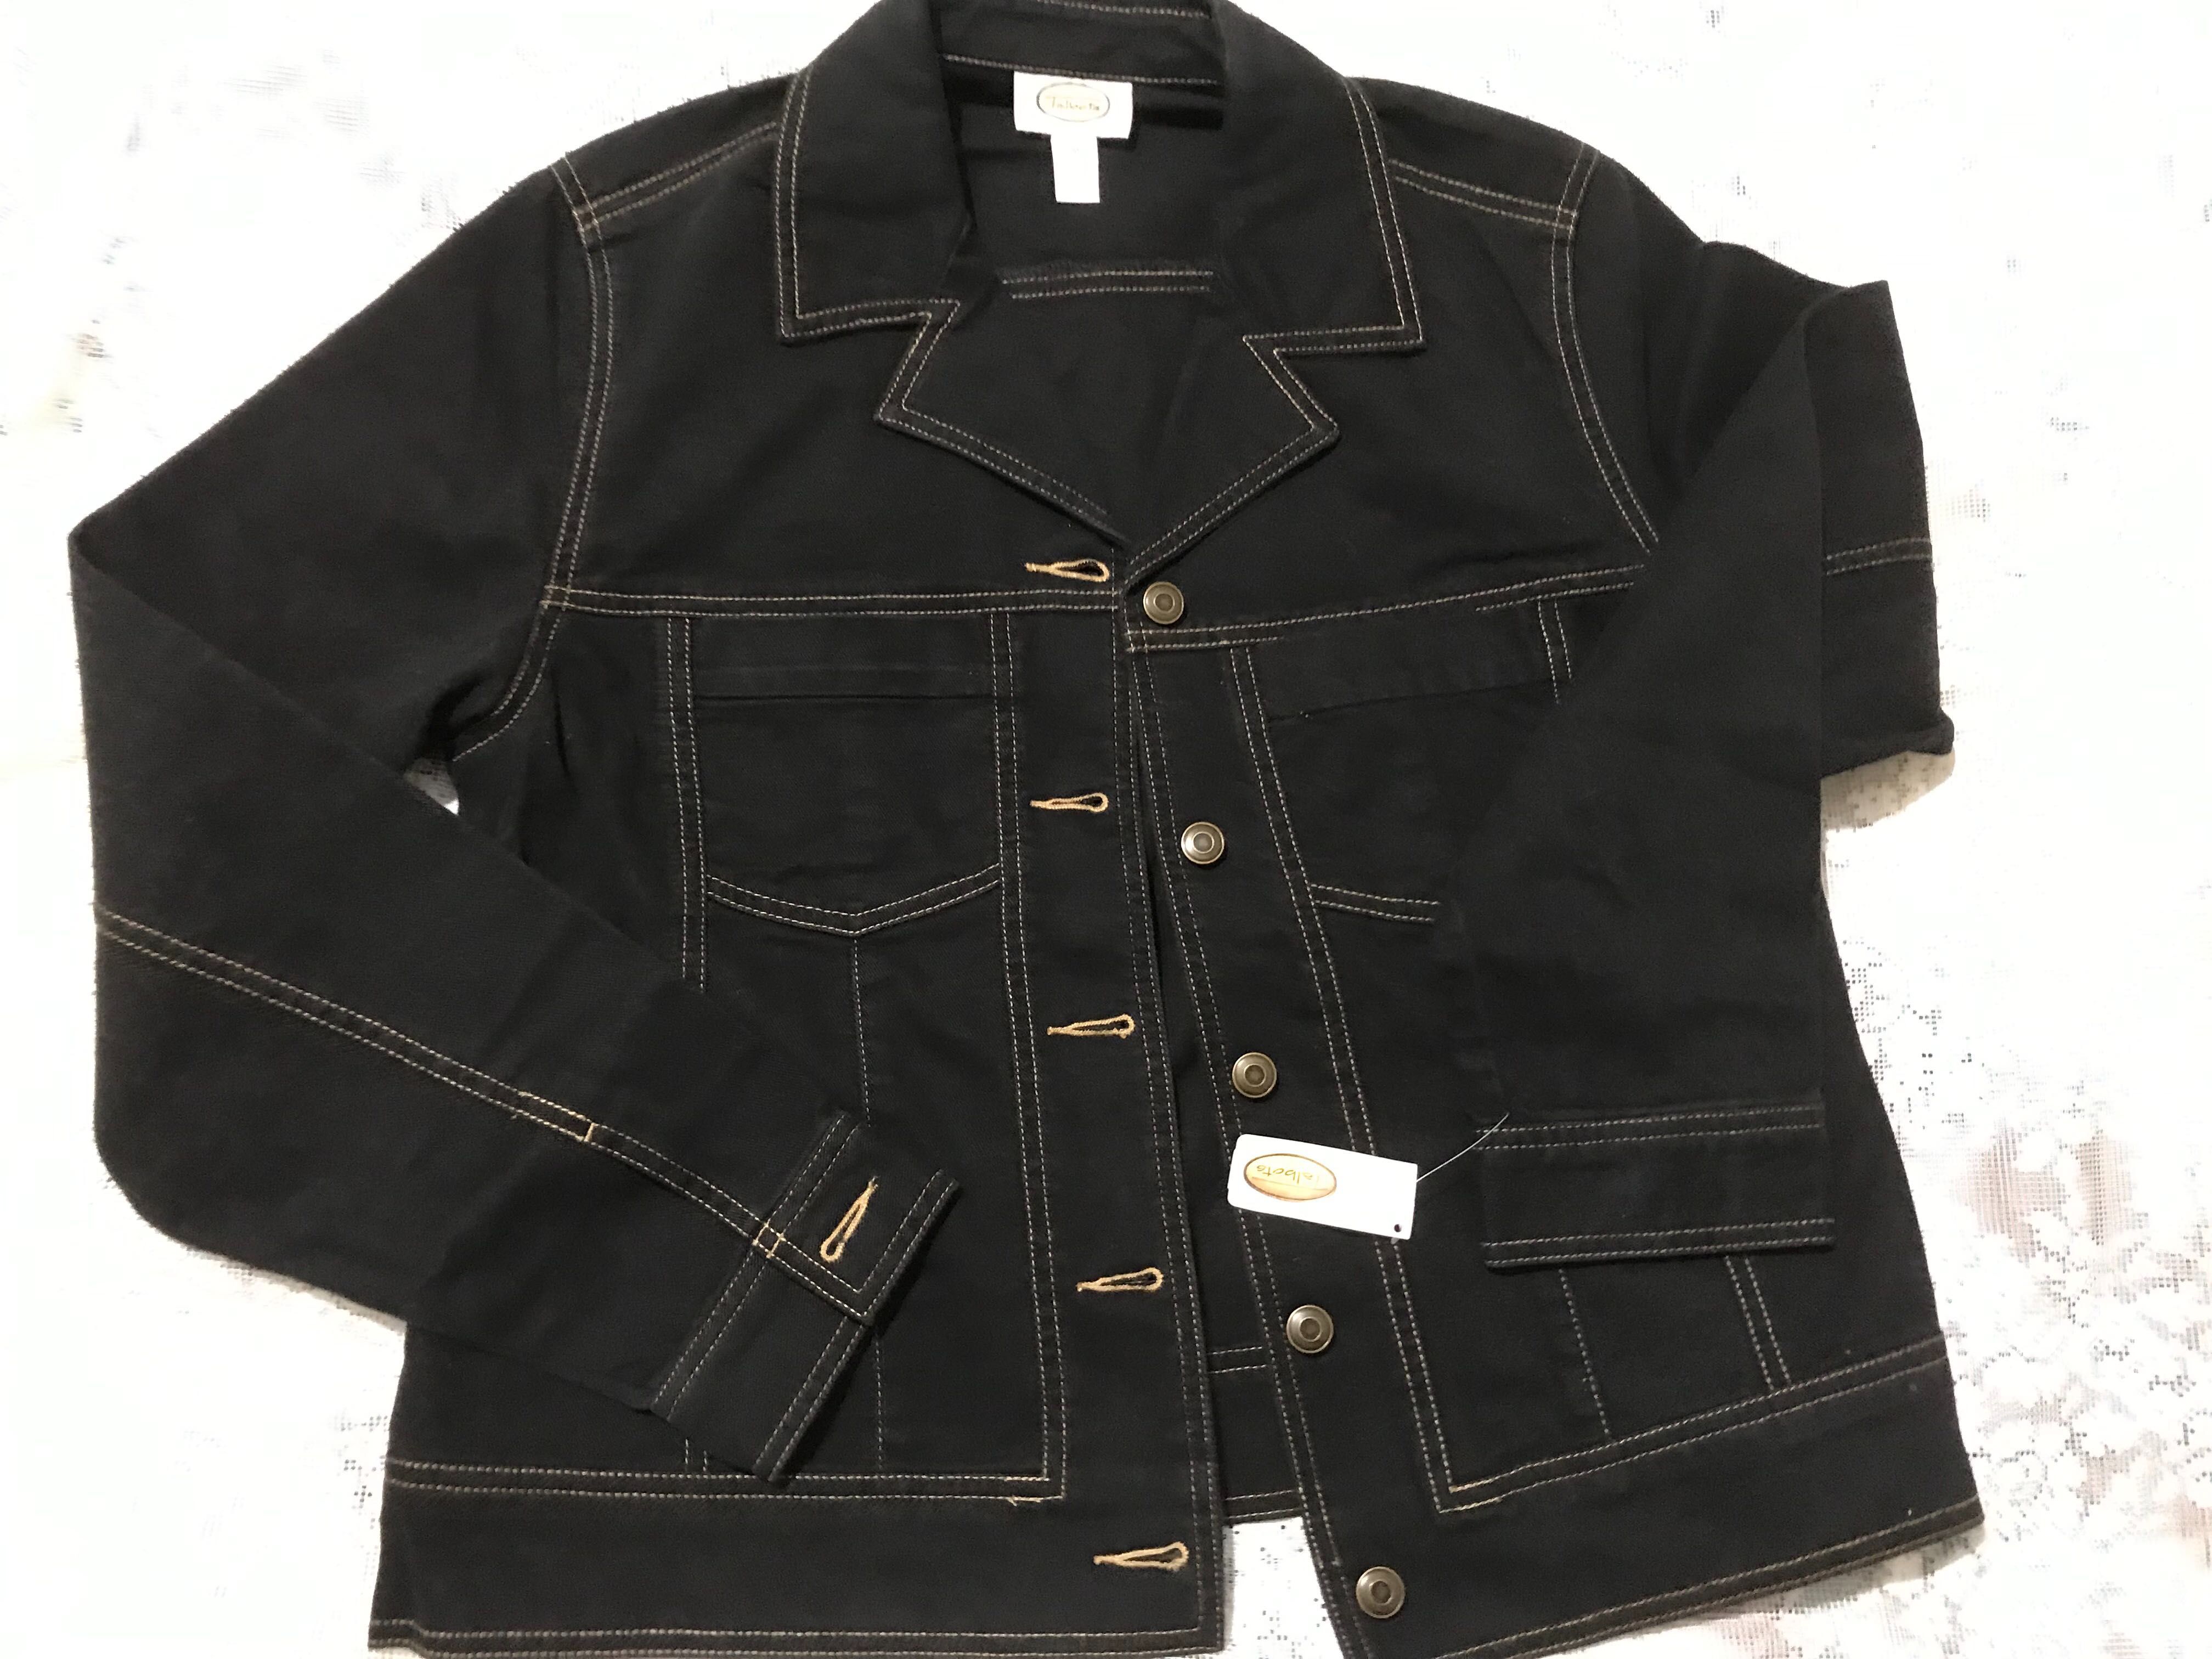 Женская джинсовая куртка чёрного цвета размер М из США